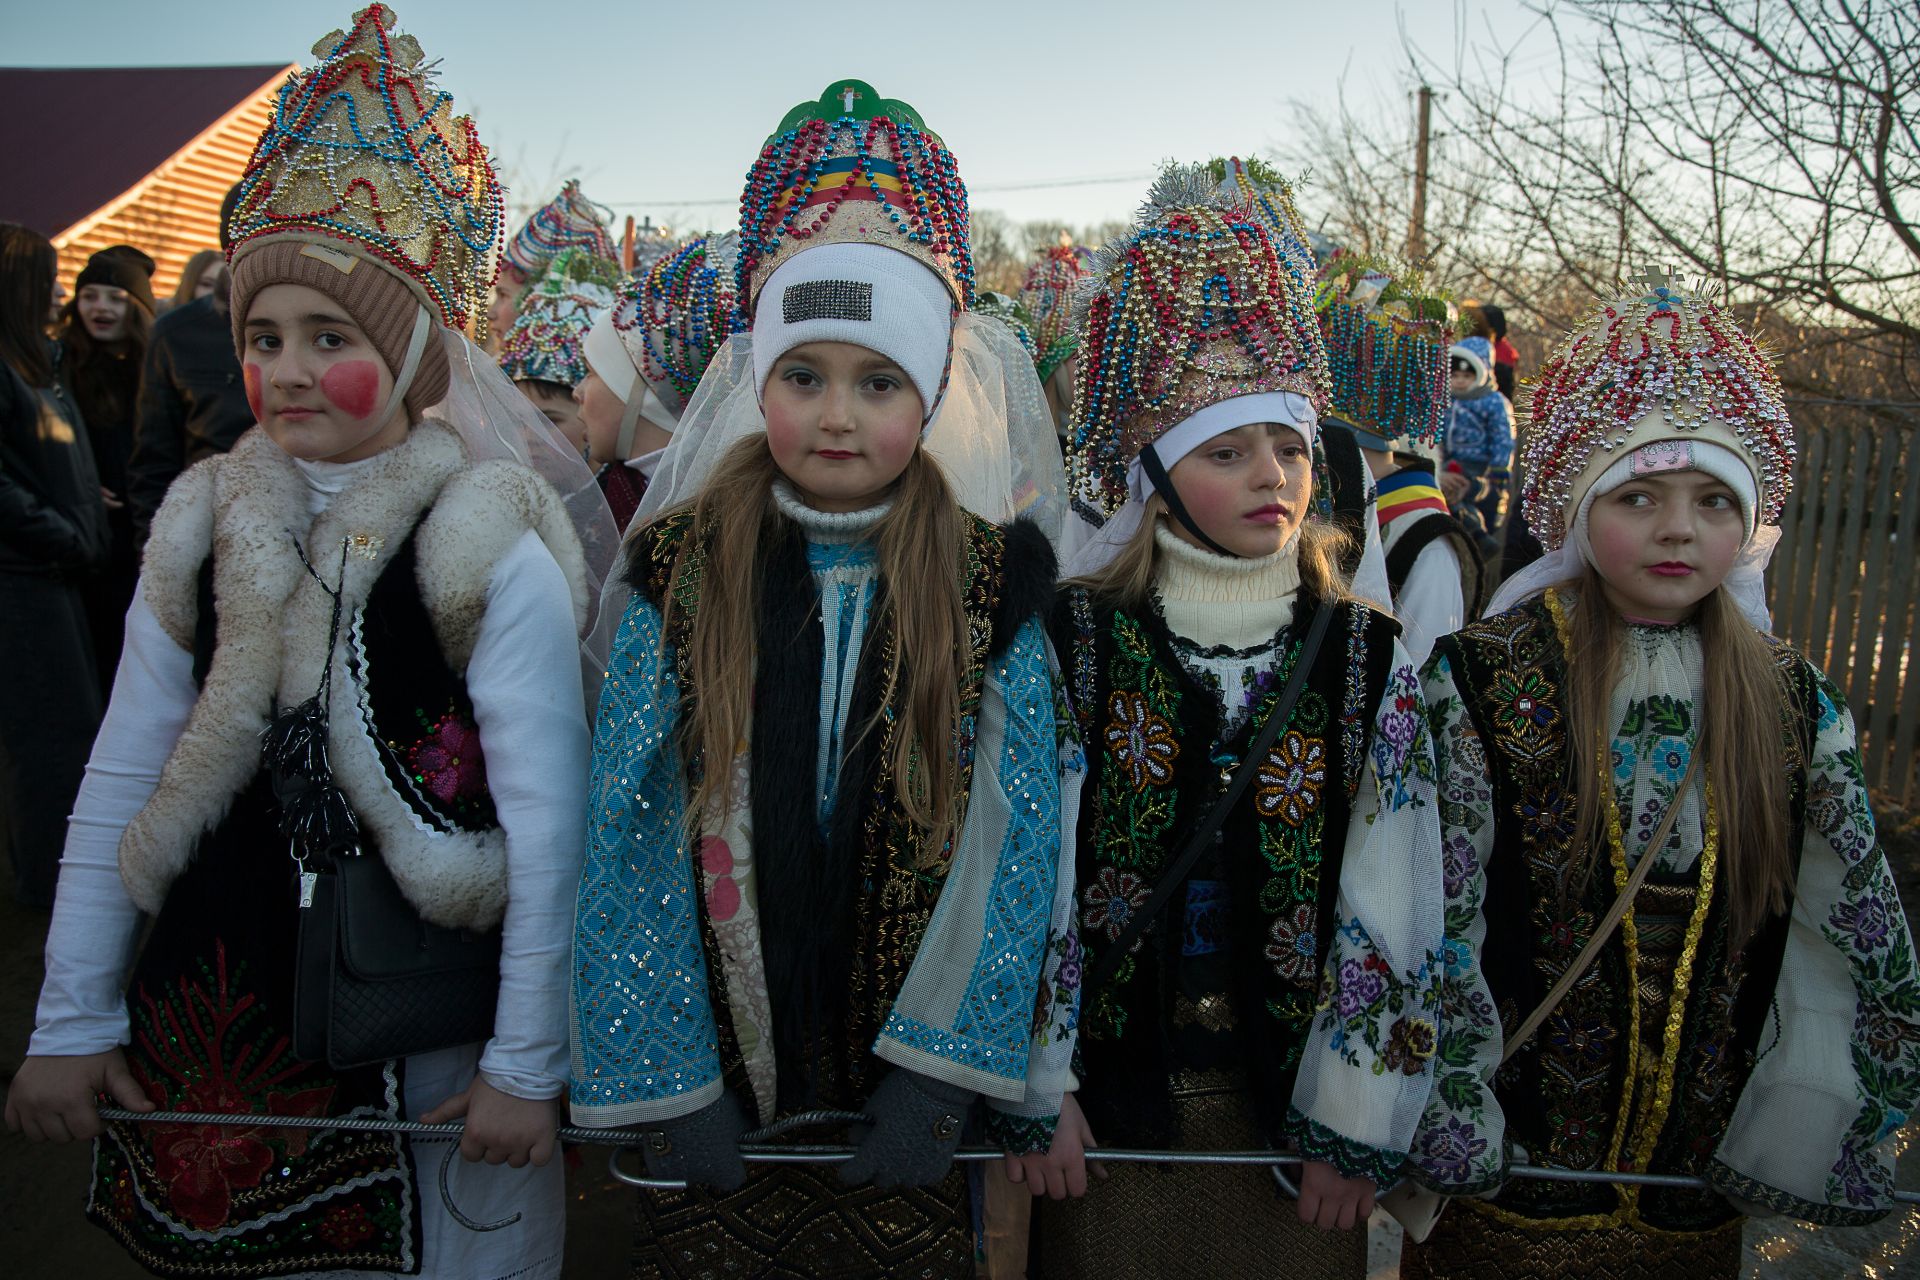 Момичетата чакат инструкциите от по-възрастните участници в празника на Маланка, който се провежда Краснойлск, Украйна. Маланка е древна, езическа традиция, която се празнува на Нова година по православния календар, седмица след Православната Коледа. Най-известната Маланка се развива в село Красноилск, което се намира близо до украинско-румънската граница. Хората носят сложни костюми и играят различни герои, ходейки от къща на къща, коледувайки. Някои костюми могат да тежат до 100 килограма. Снимката е на Зузана Гогова. 